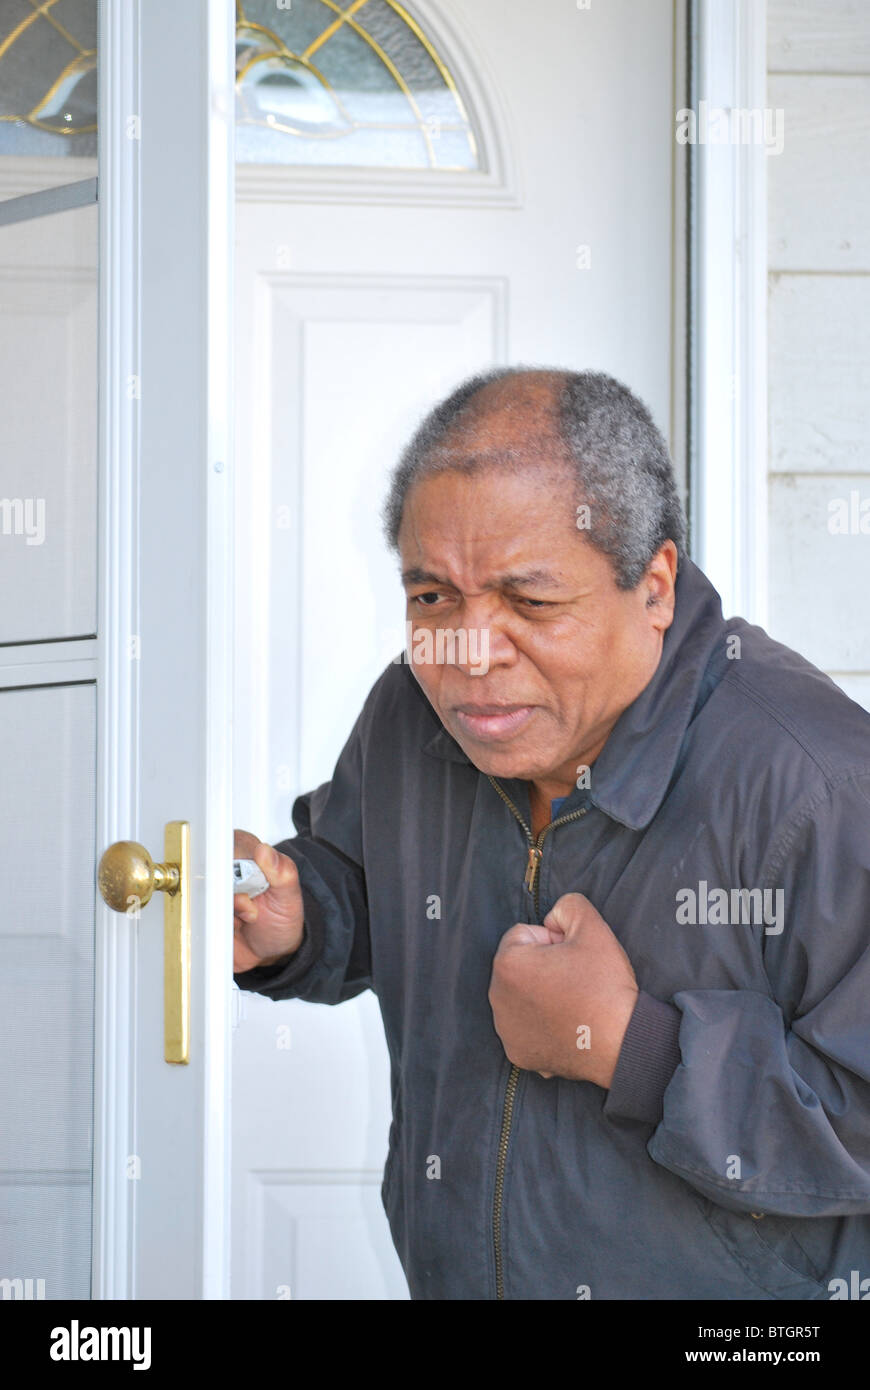 African American man avoir une crise cardiaque tout en laissant sa maison. Banque D'Images